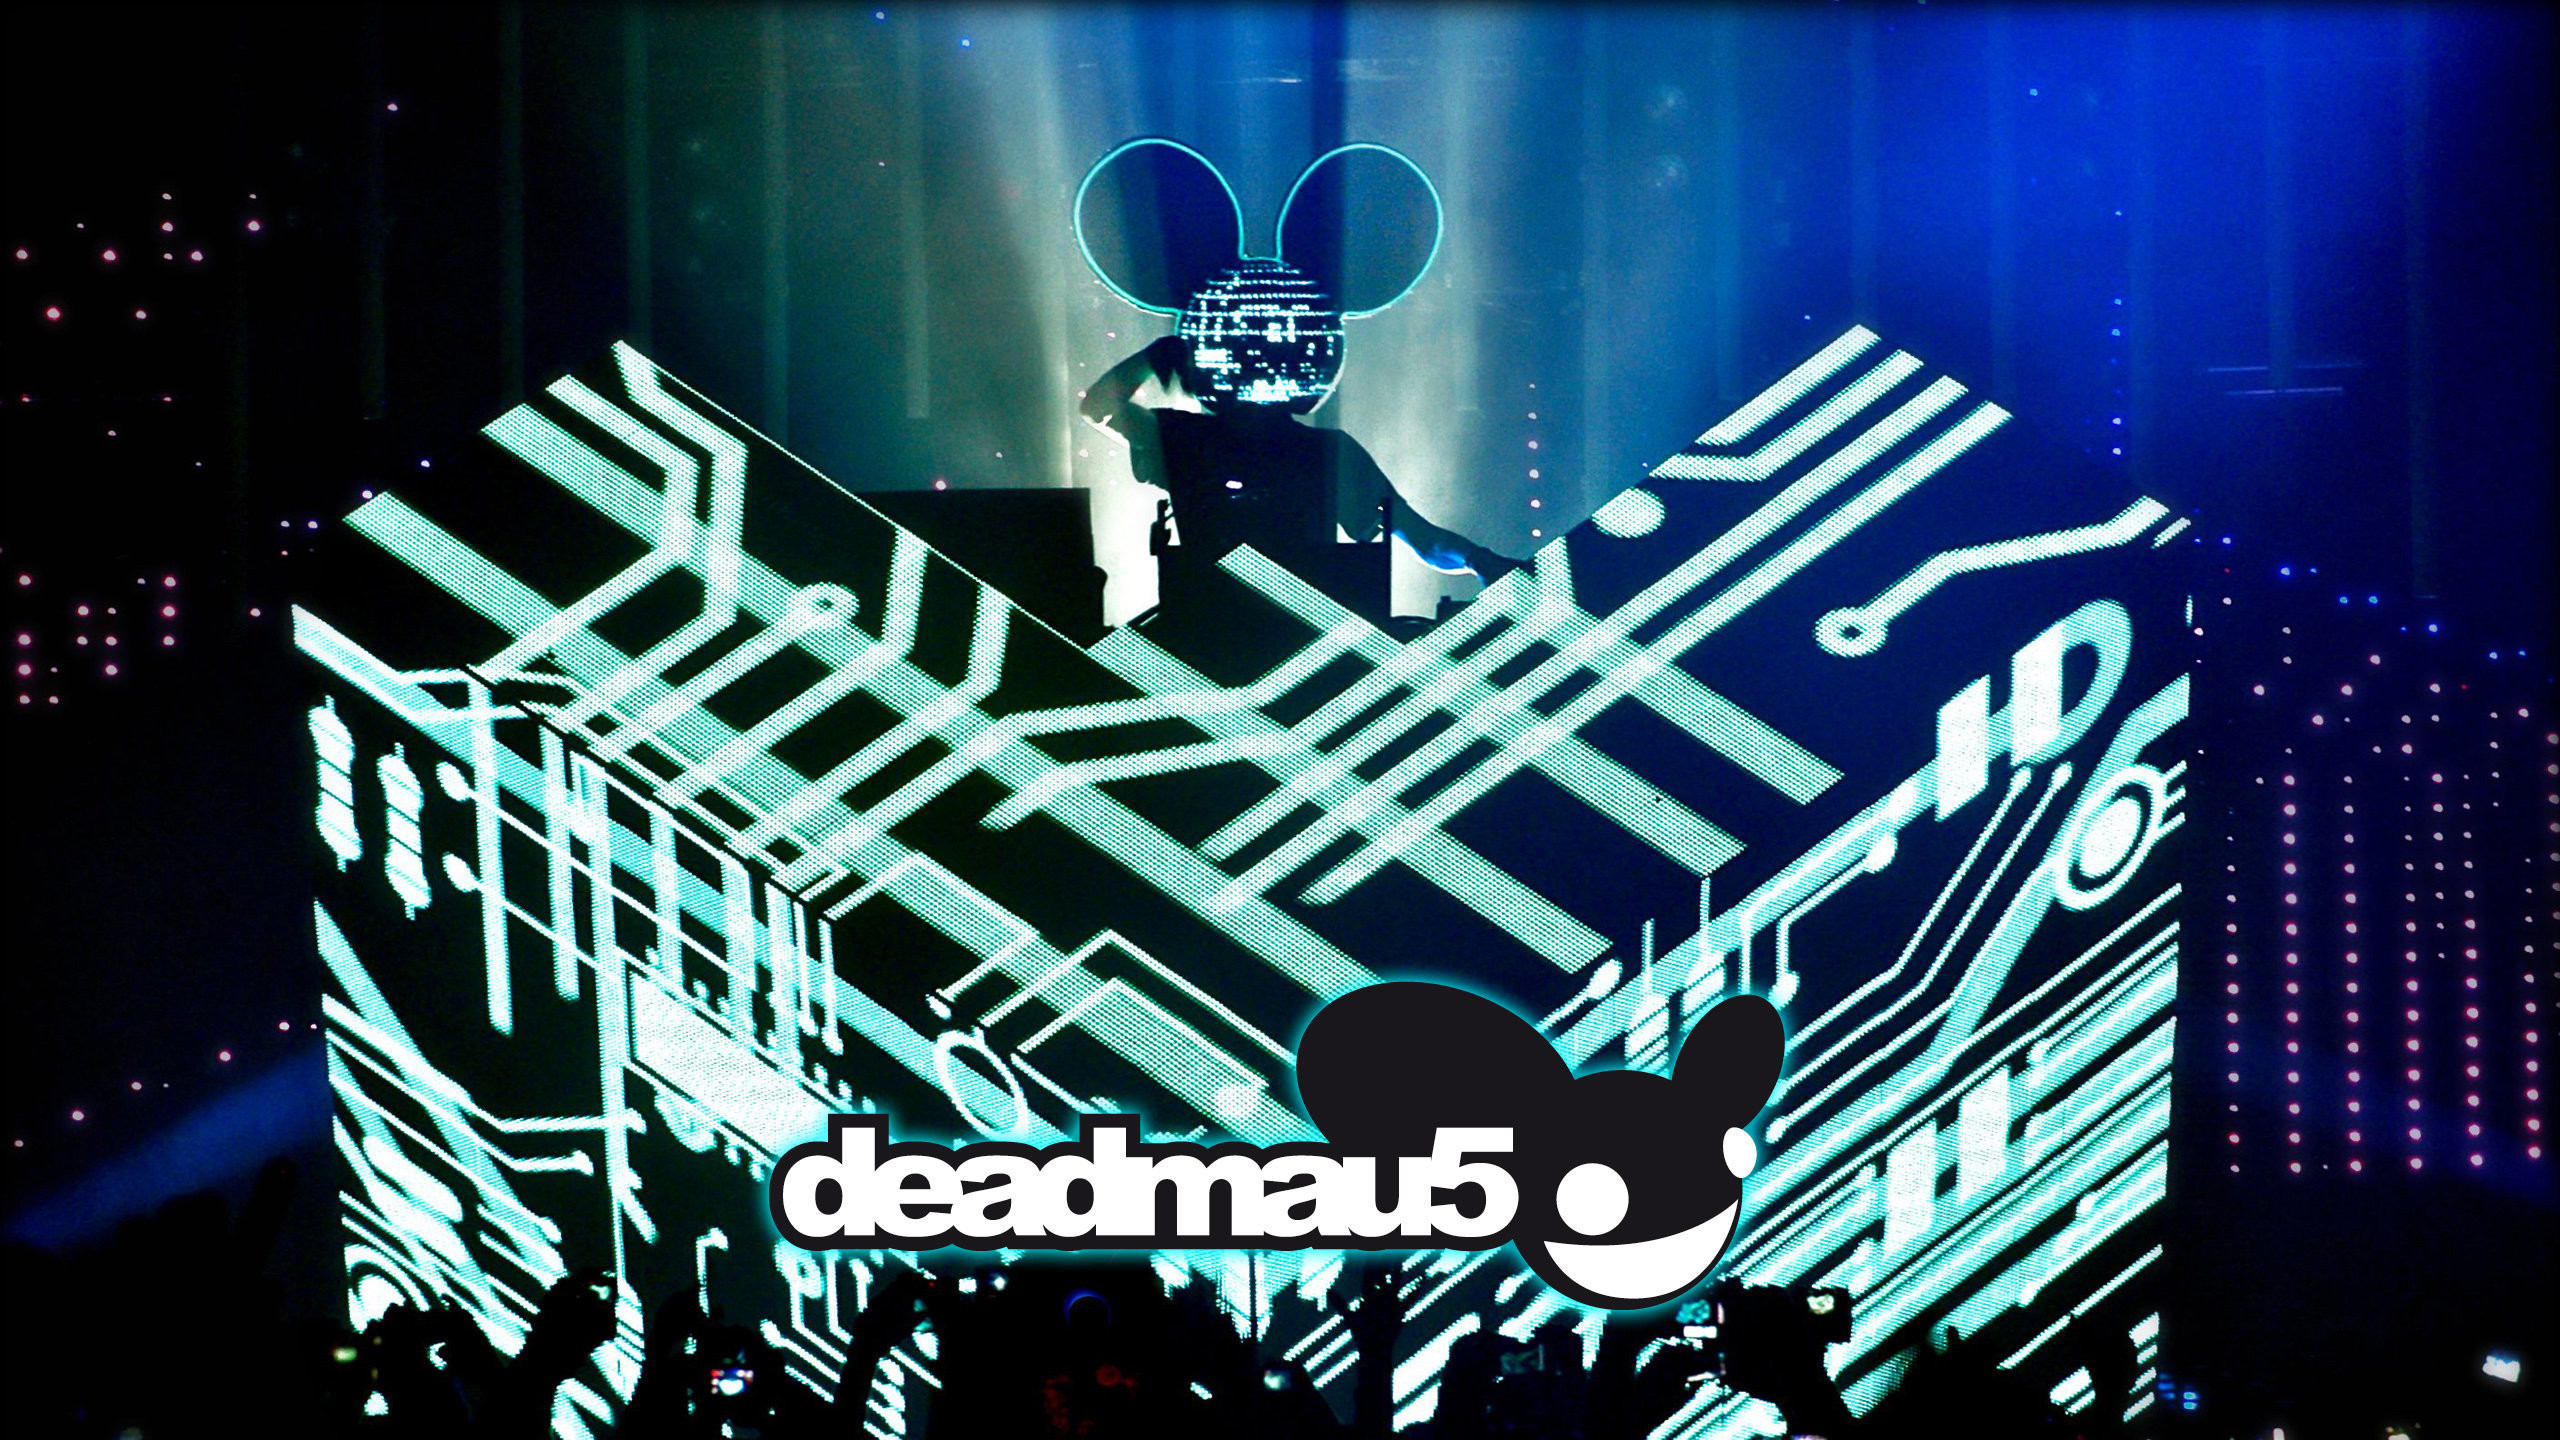 2560x1440 Deadmau5 DJ Booth Wallpaper